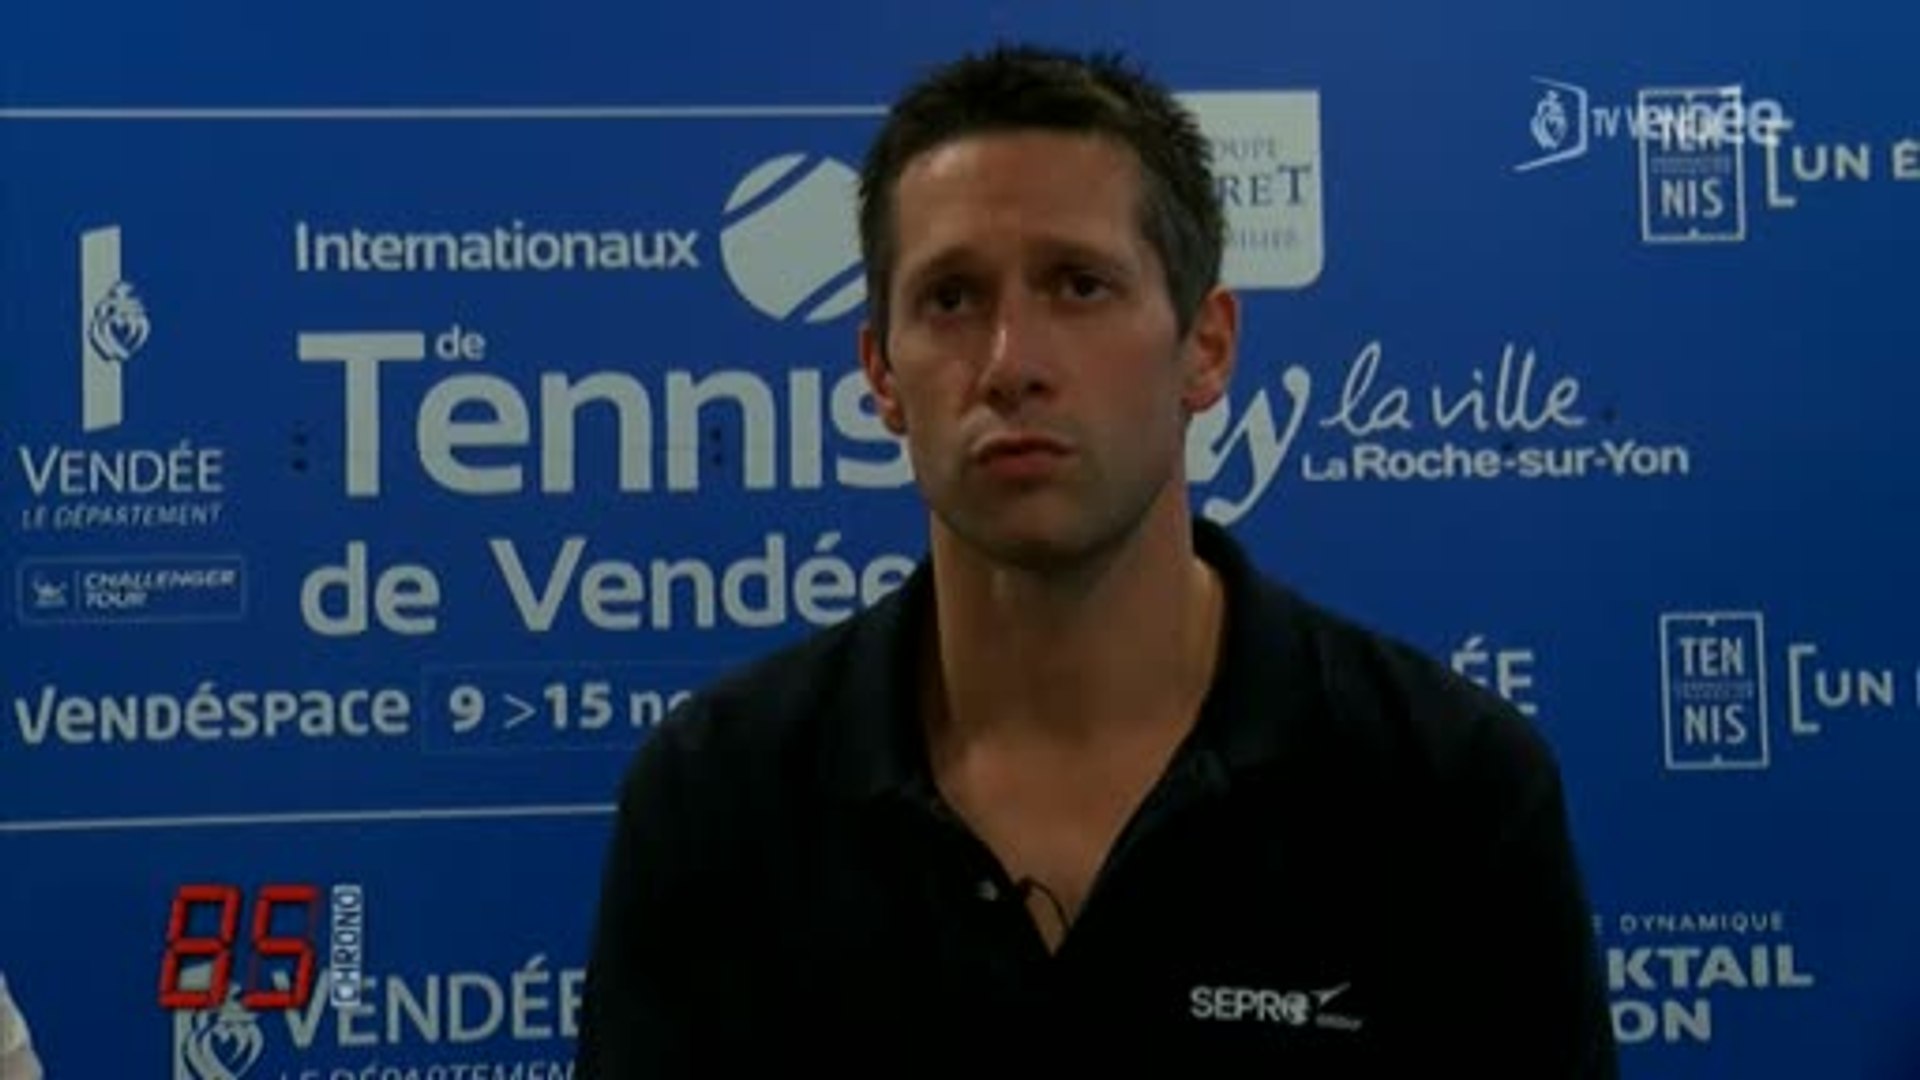 Internationaux de Tennis de Vendée : Interview de G. Menguy - Vidéo  Dailymotion